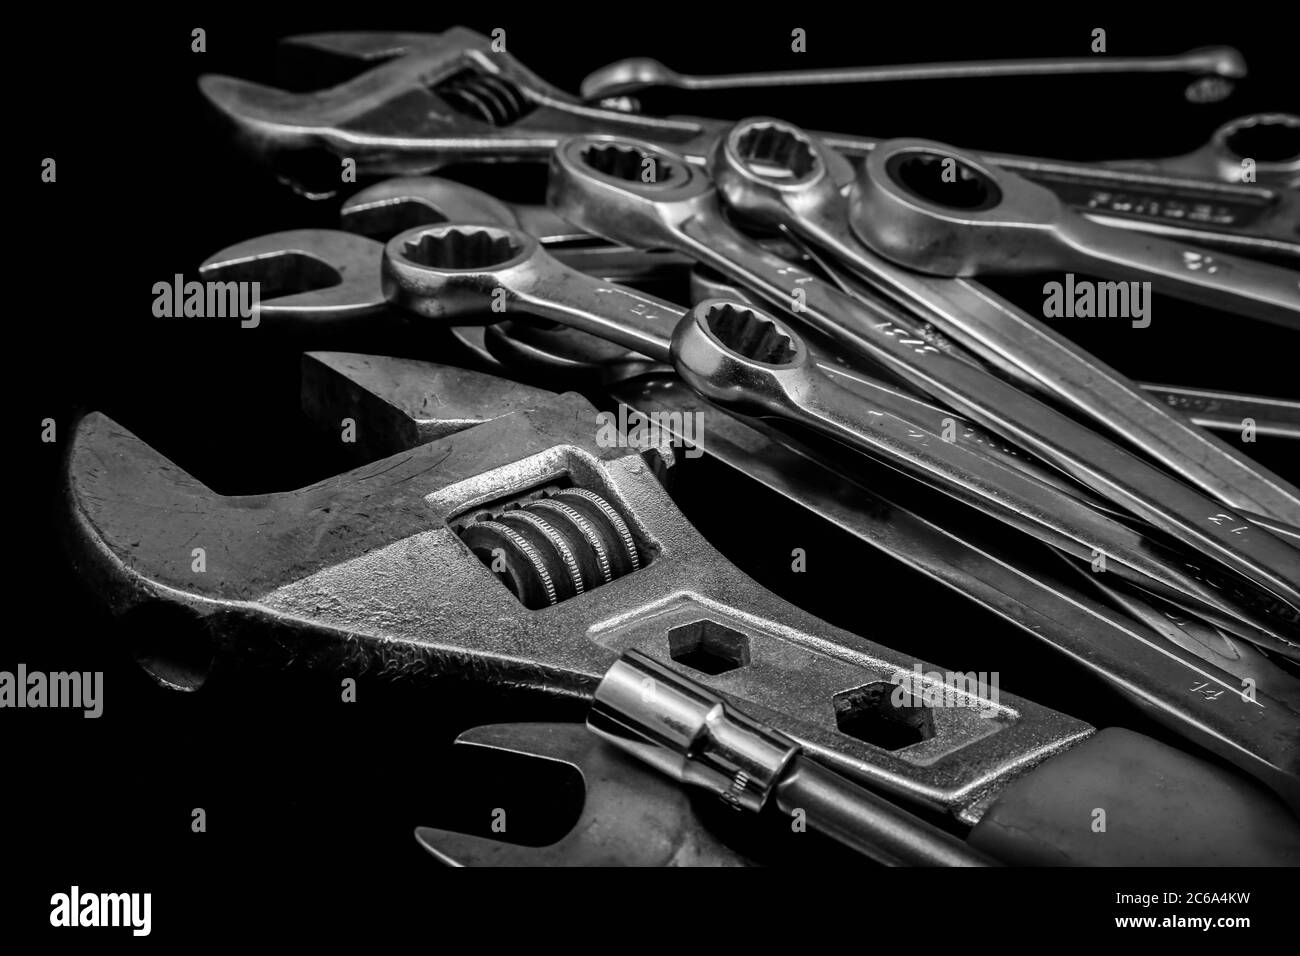 Utensili industriali come le chiavi francesi e una varietà di chiavi da primo piano sotto forma di immagini a colori e in bianco e nero. Foto Stock